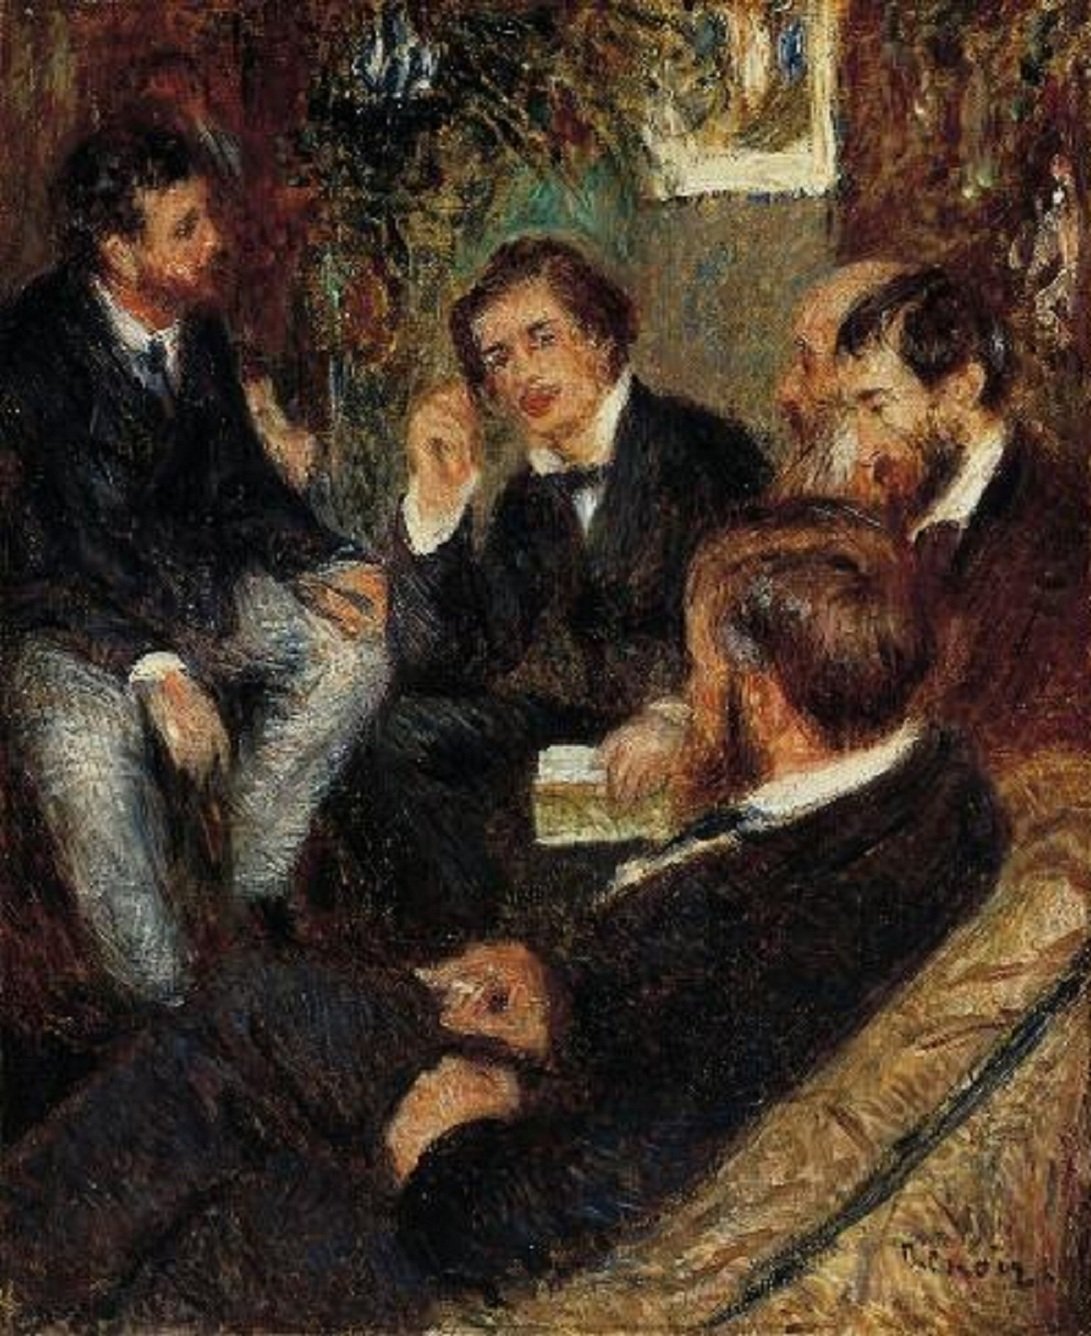 Pierre+Auguste+Renoir-1841-1-19 (1002).jpg